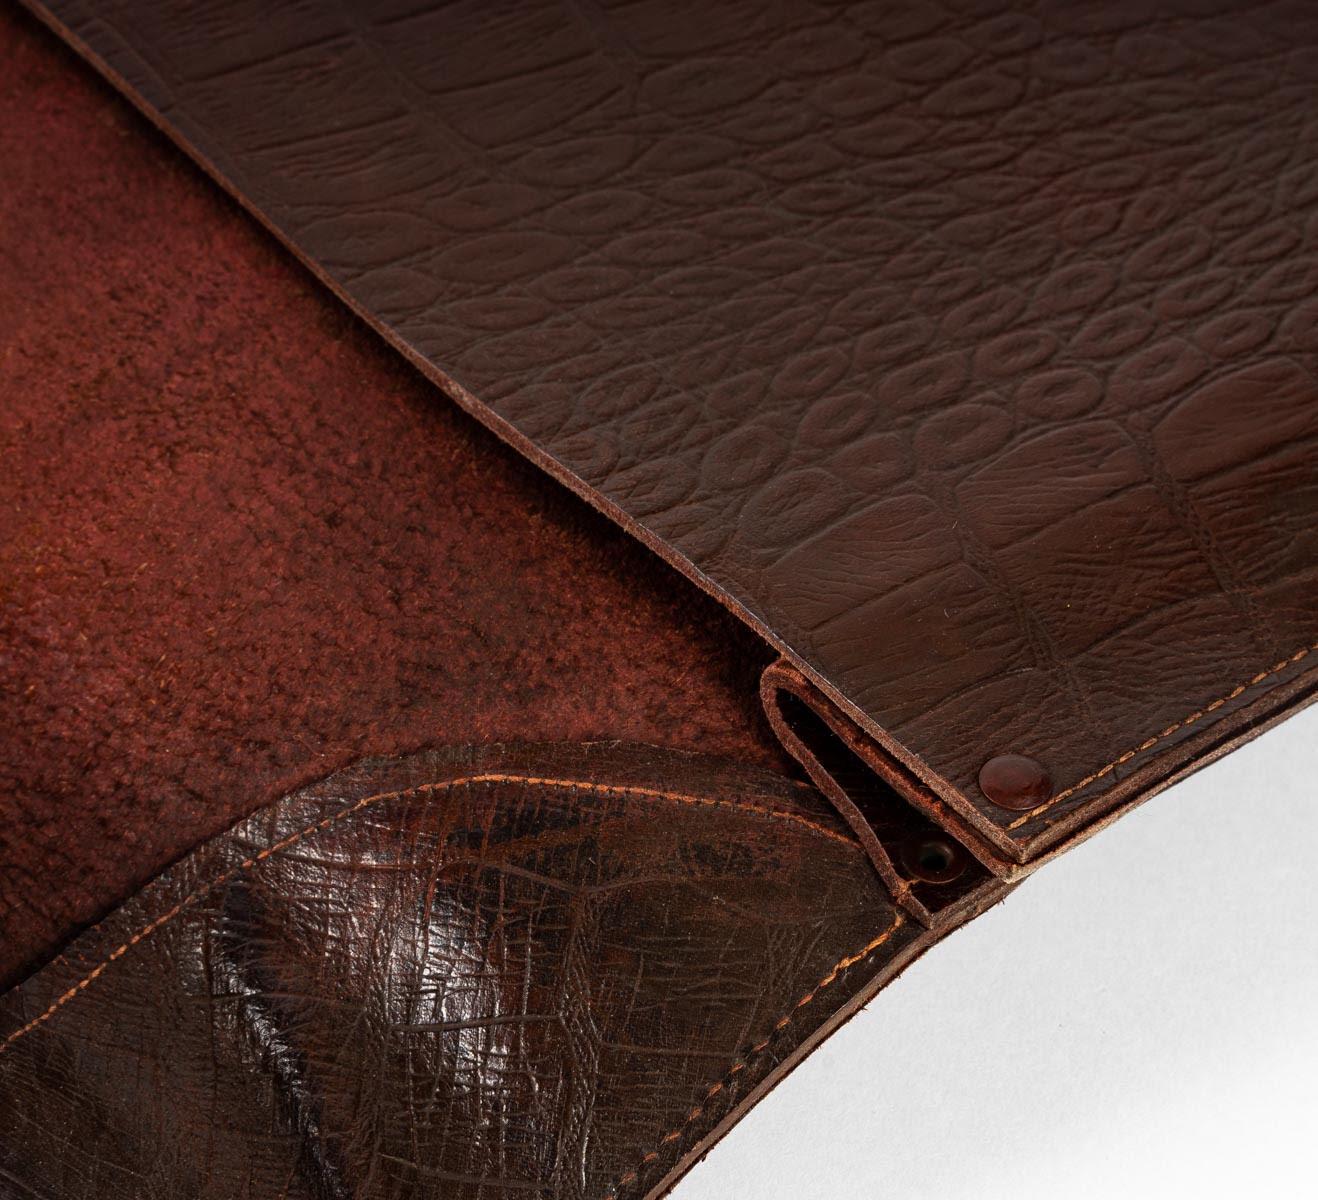 Leather briefcase, crocodile style, 20th century.
Measures: H: 28 cm, W: 37 cm, D: 5 cm.